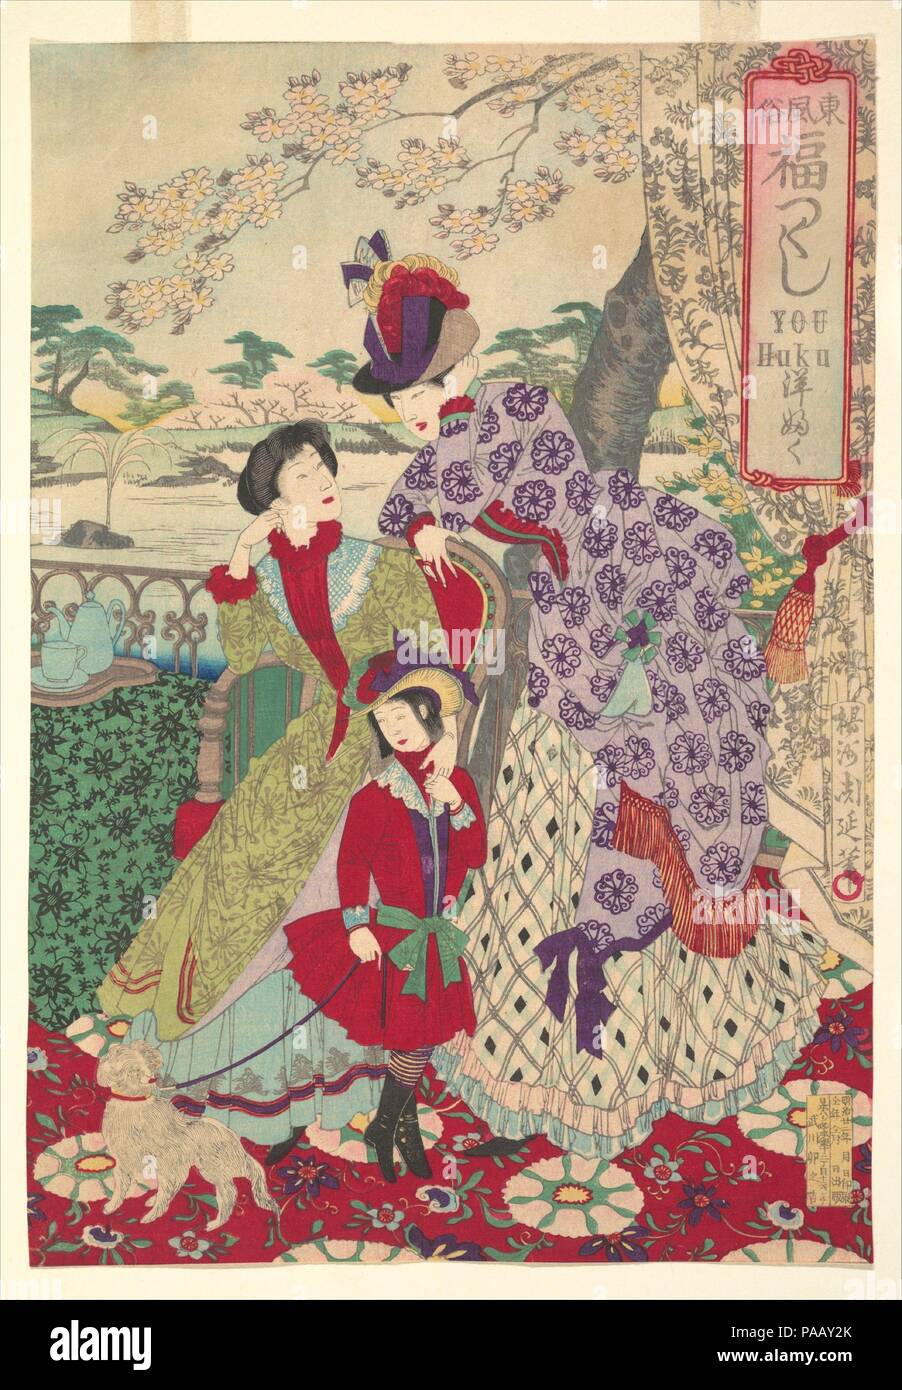 Les vêtements occidentaux à partir de la série d'une gamme d'heureuse coutumes de l'Est du Japon (Azuma fuzoku, fukuzukushi-Yofuku). Artiste : Yoshu Chikanobu (Hashimoto), japonais (1838-1912). Culture : le Japon. Dimensions : 12 x 8 Oban 15/16 à 15/16. (32,9 x 22,7 cm). Date : 1889. Vêtus de vêtements français sophistiqué, sans doute acquis dans le nouveau quartier commercial de Ginza modernisé, ces deux dames et de la jeune fille semblent prêts pour une promenade dans le jardin derrière eux. Sur la table est une théière avec tasse et soucoupe. Dans le jardin se trouve une fontaine avec un jet d'eau vertical, une fonctionnalité récemment intr Banque D'Images